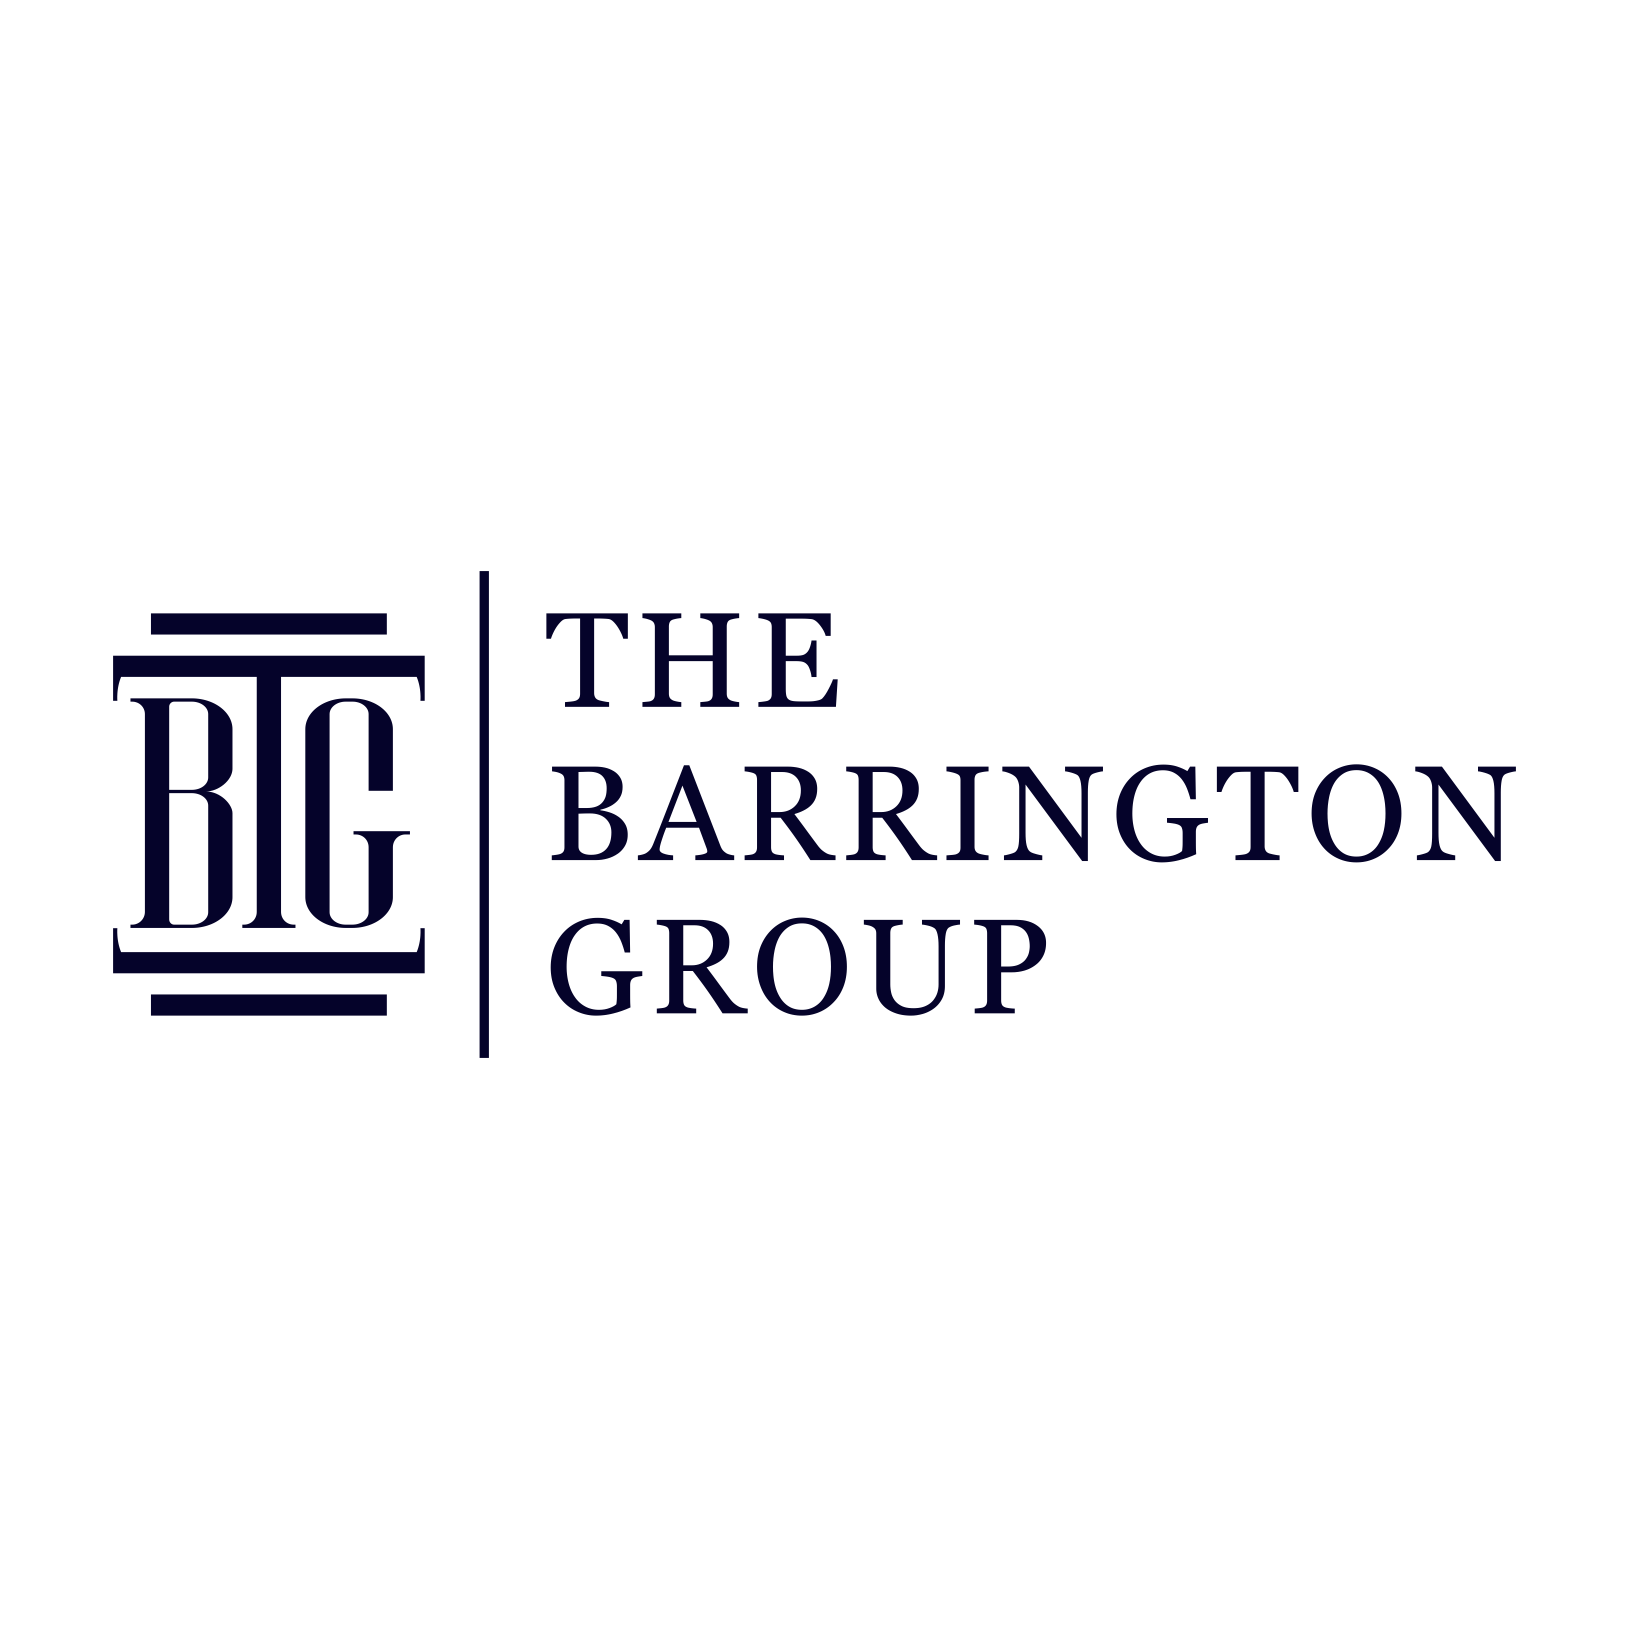 The Barrington Group